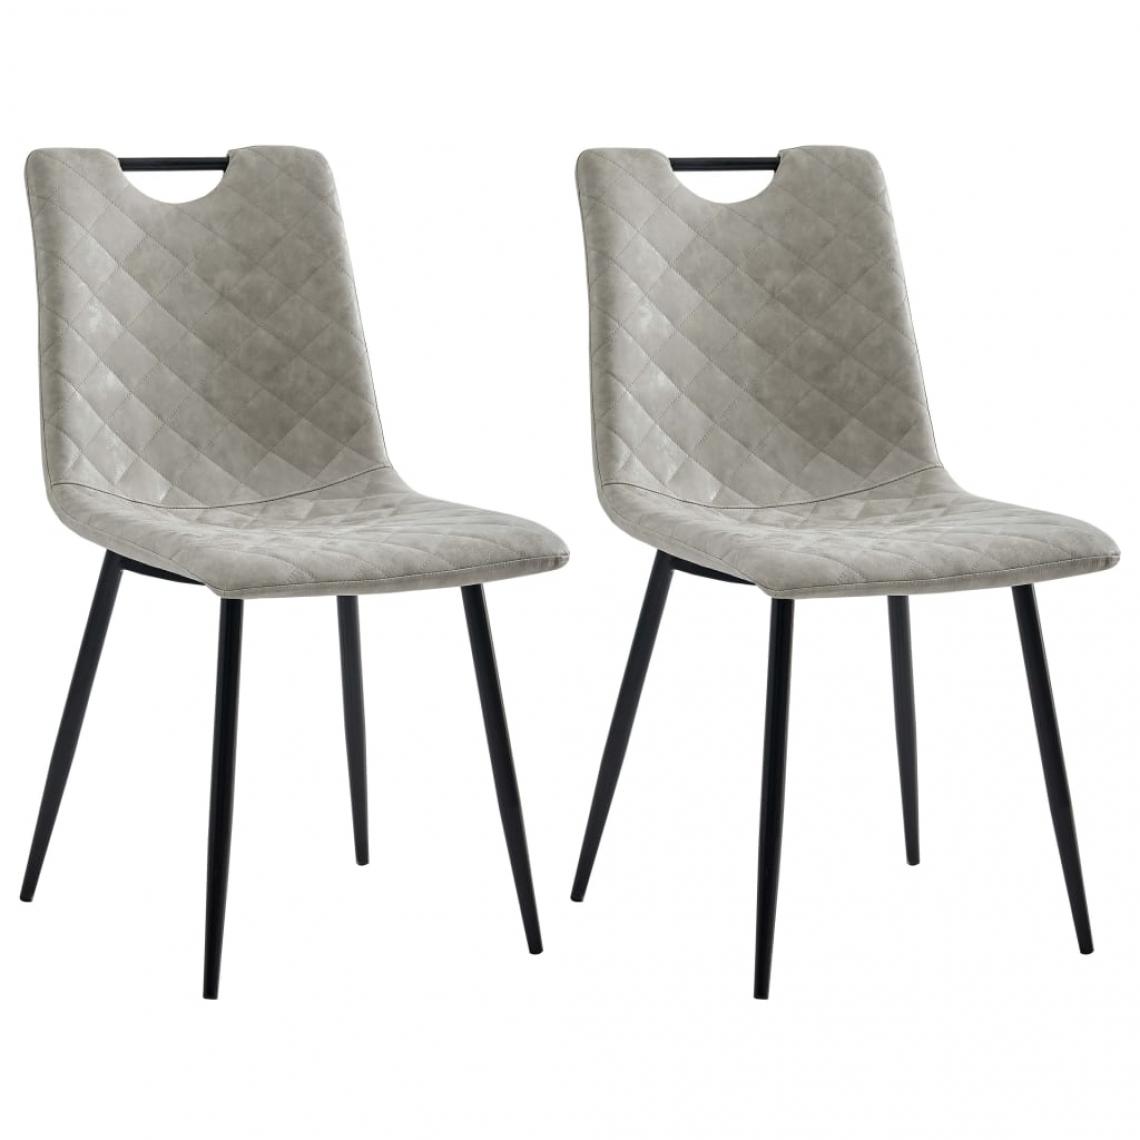 Decoshop26 - Lot de 2 chaises de salle à manger cuisine design moderne similicuir gris clair CDS020471 - Chaises